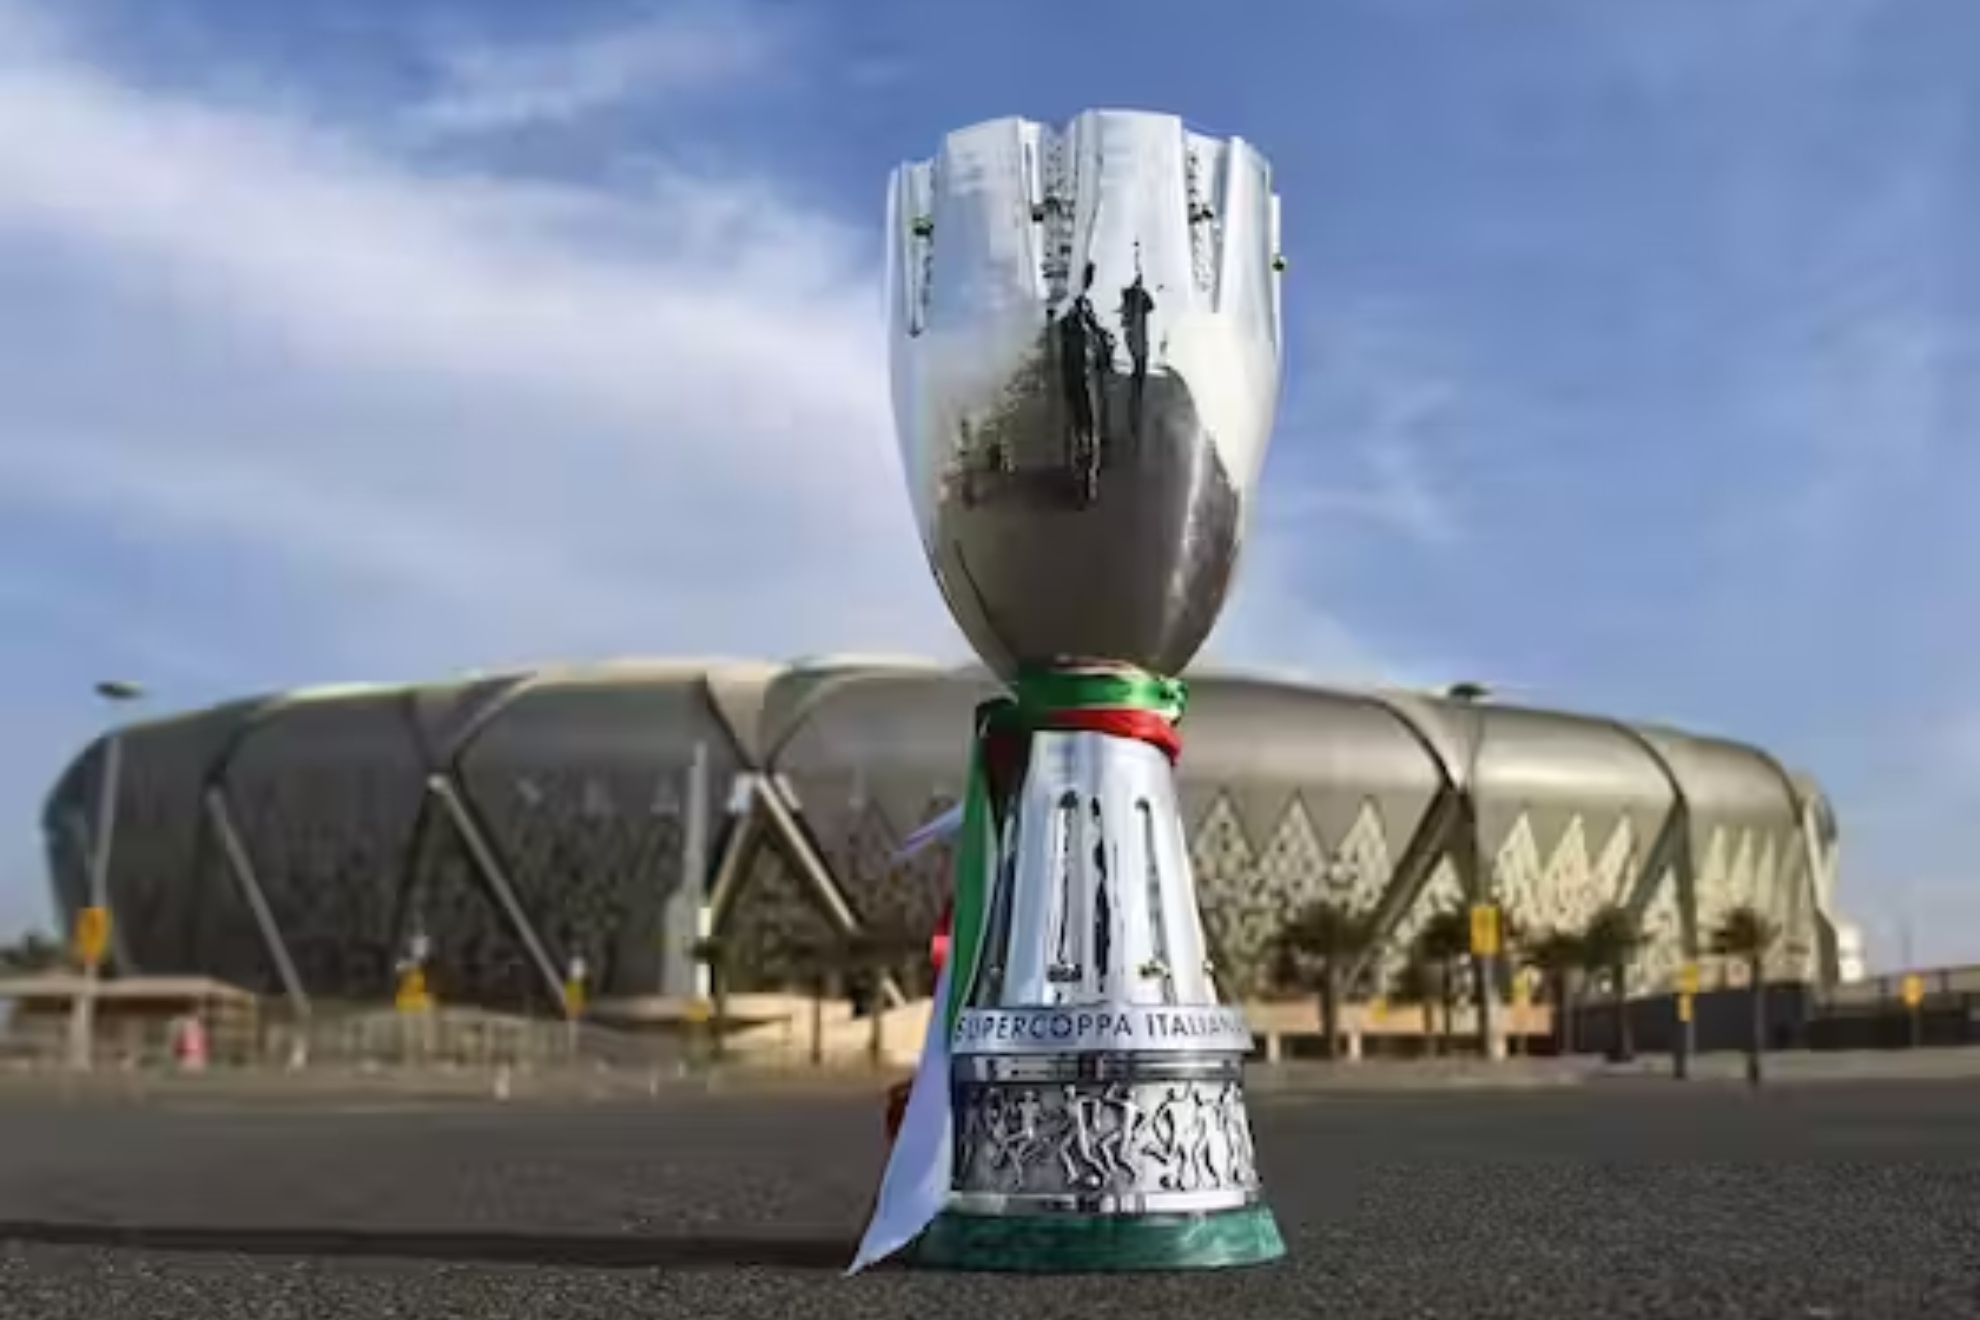 La Supercopa de Italia abre sus puertas a los tokenistas